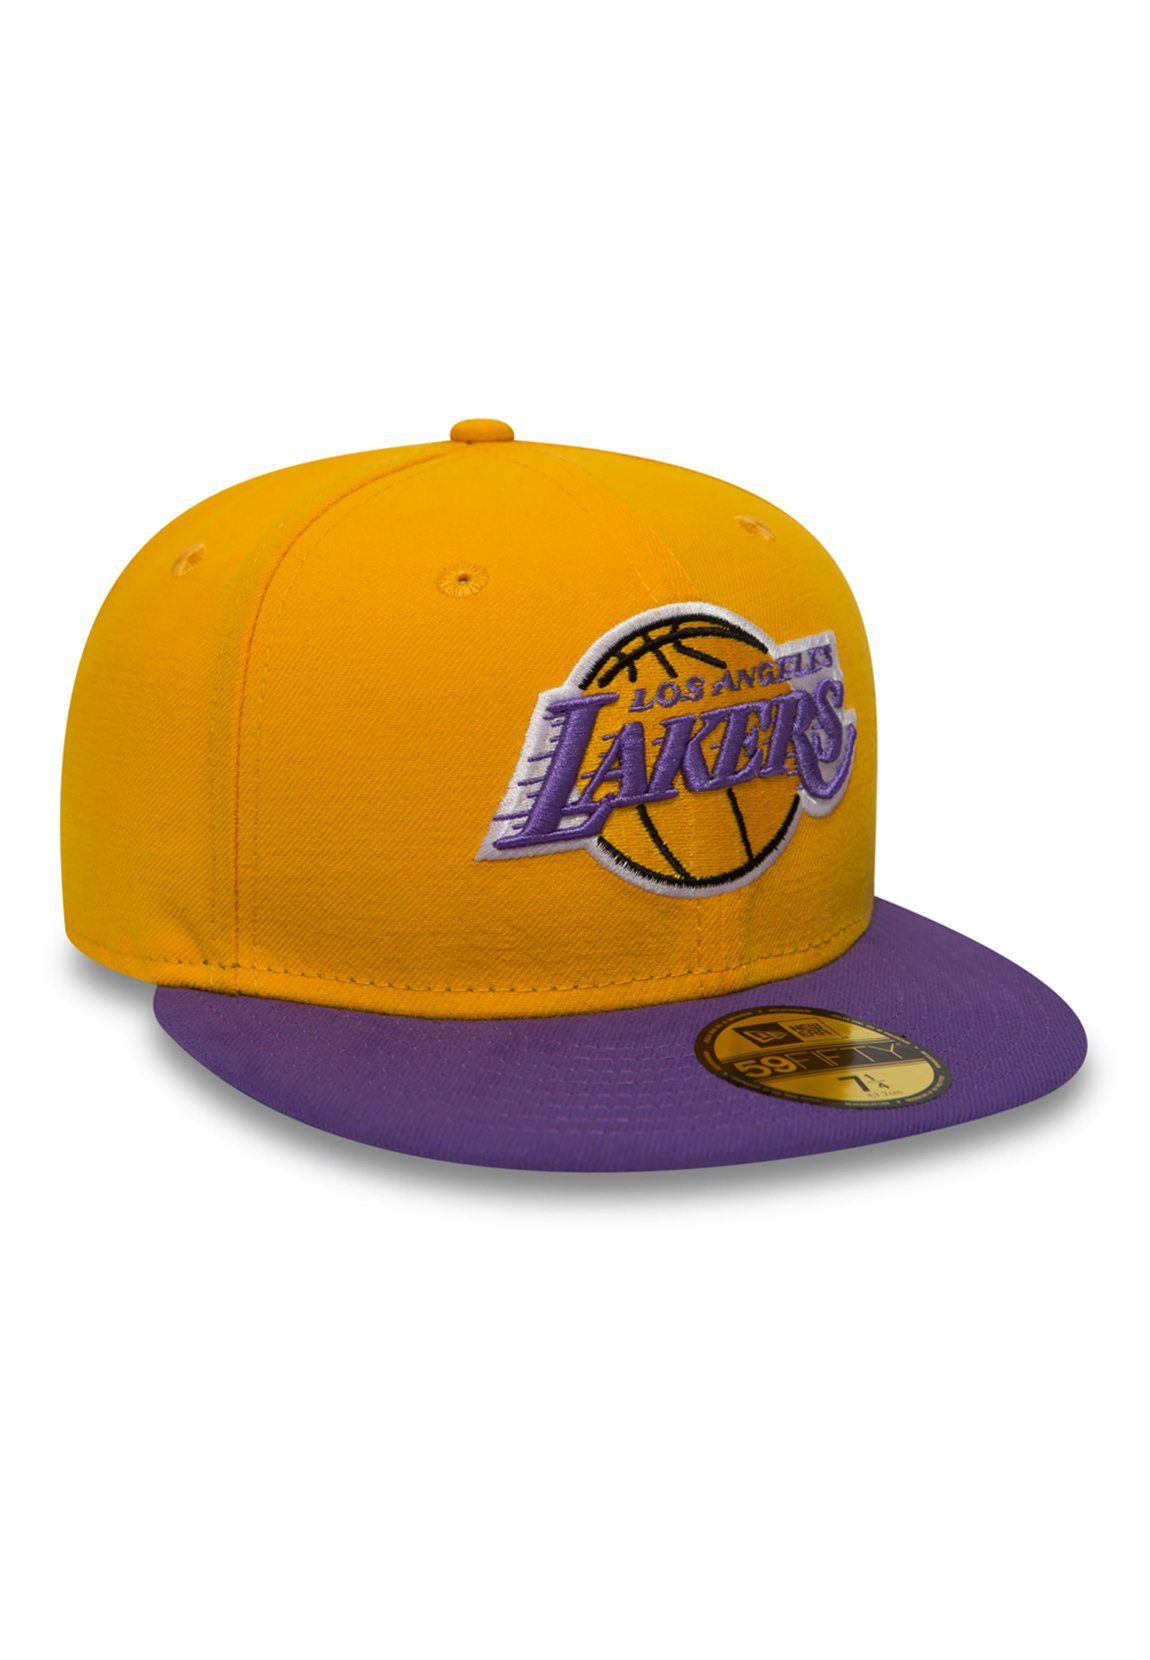 New - Cap Baseball 59Fiftys Cap Era - Yellow-Purple LA New Era LAKERS gelb